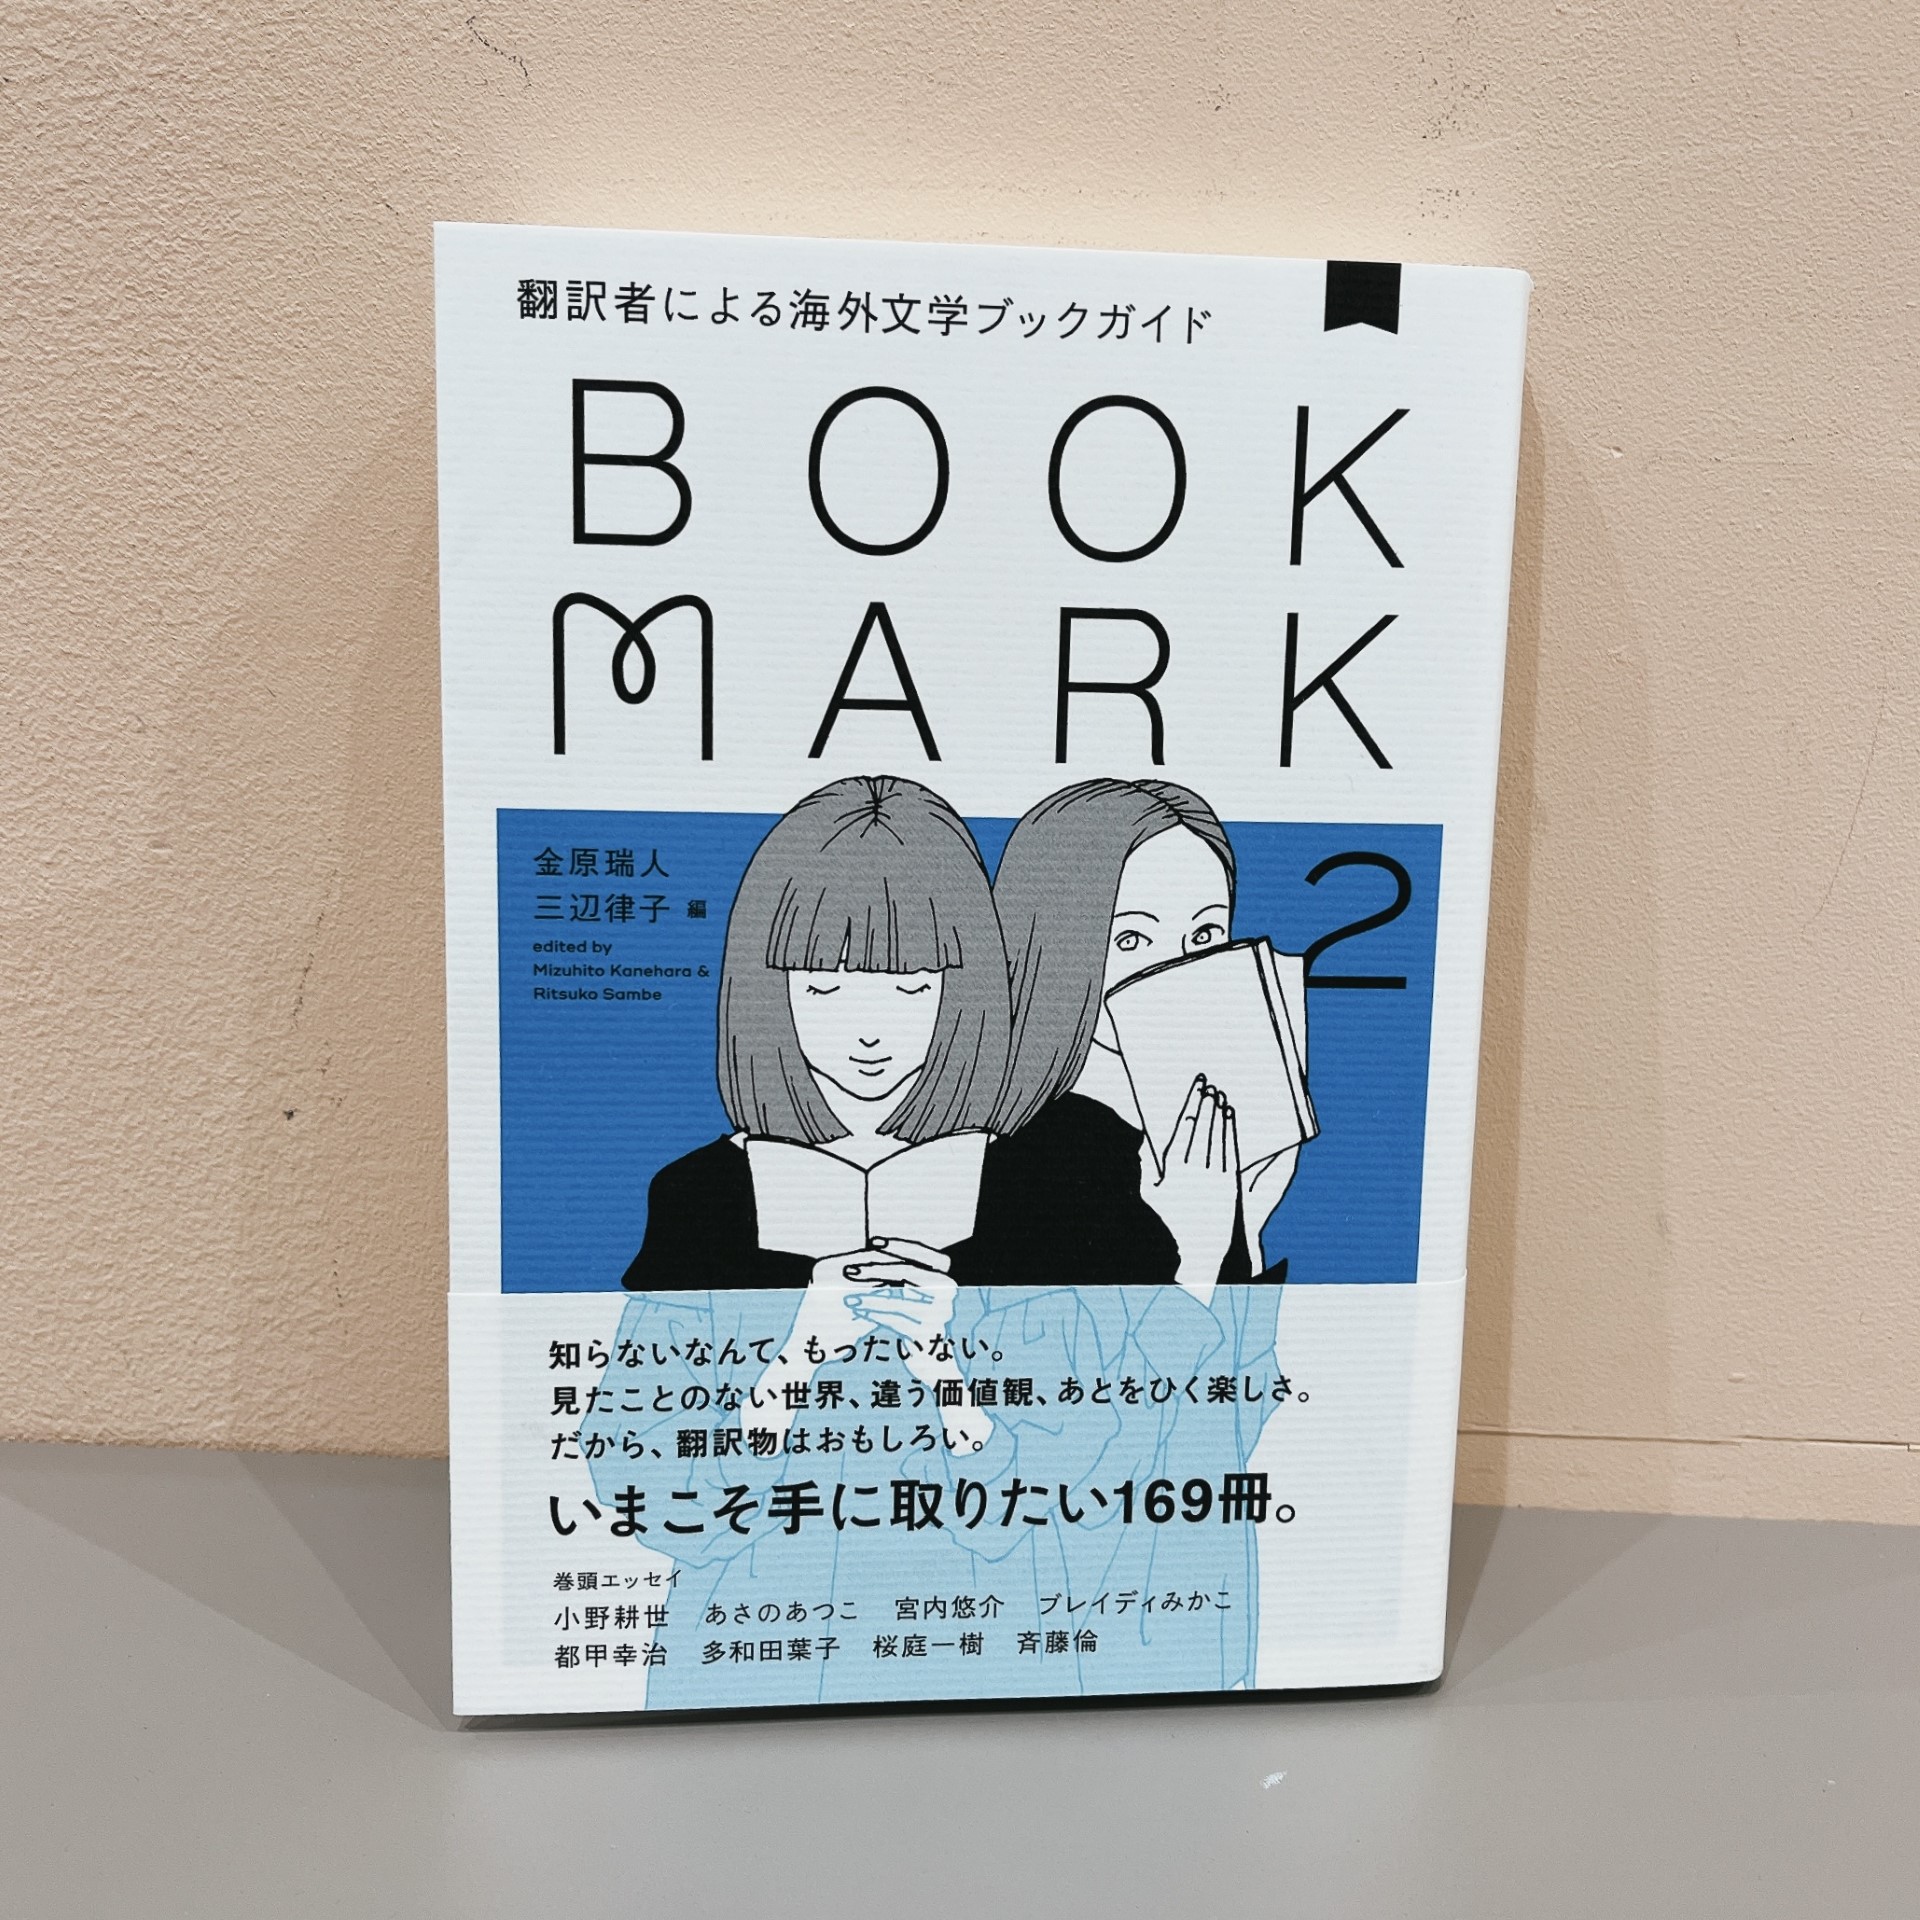 金原端人/三辺律子編『BOOK MARK 2』（CCCメディアハウス）